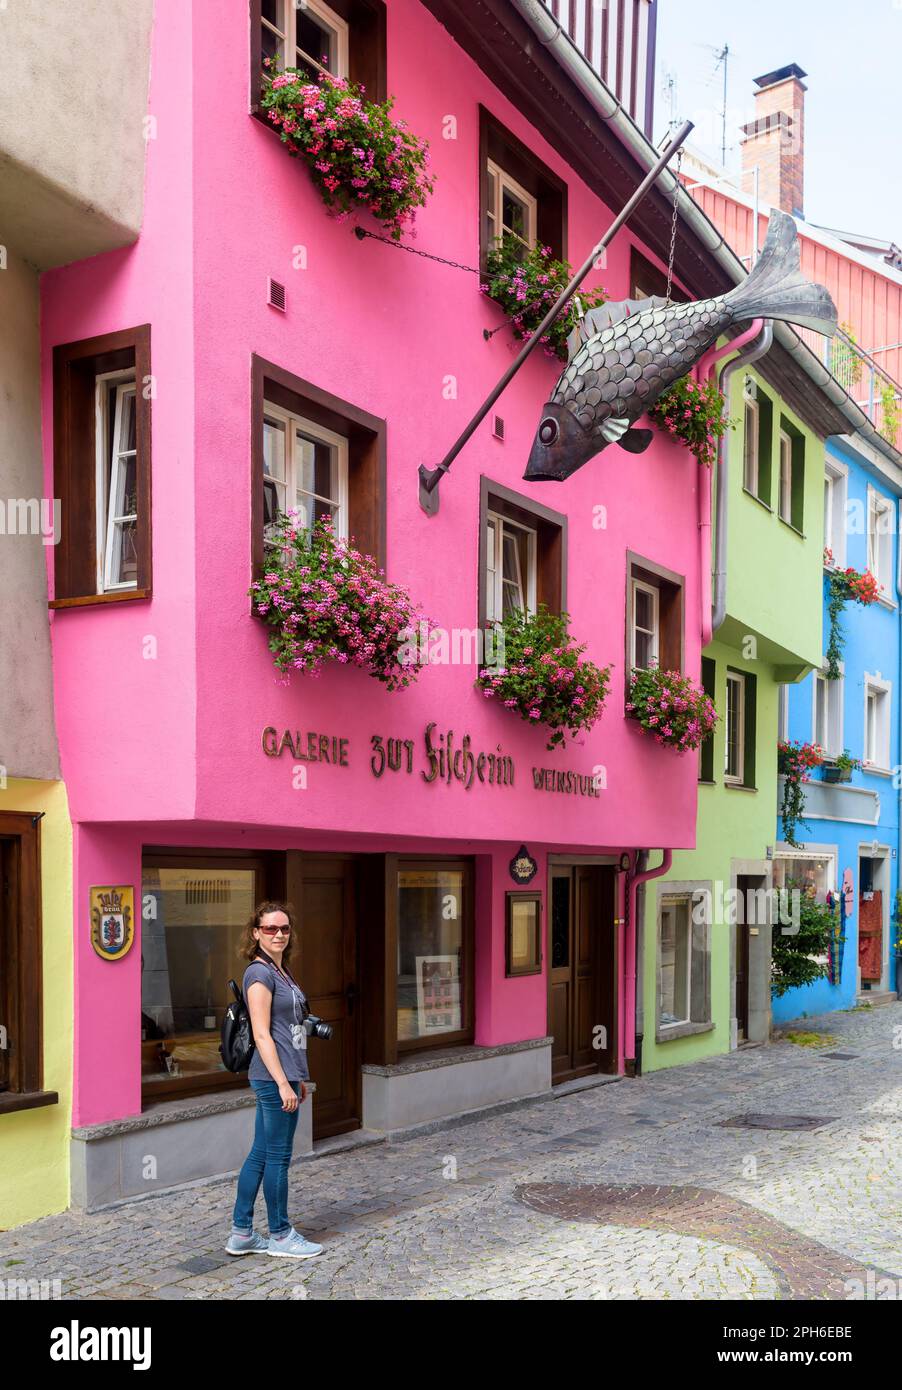 Lindau, Allemagne - 19 juillet 2019: Rue avec des maisons colorées dans la vieille ville de Lindau, la femme touristique marche dans l'allée en passant par le restaurant de poissons en été. Elles Banque D'Images